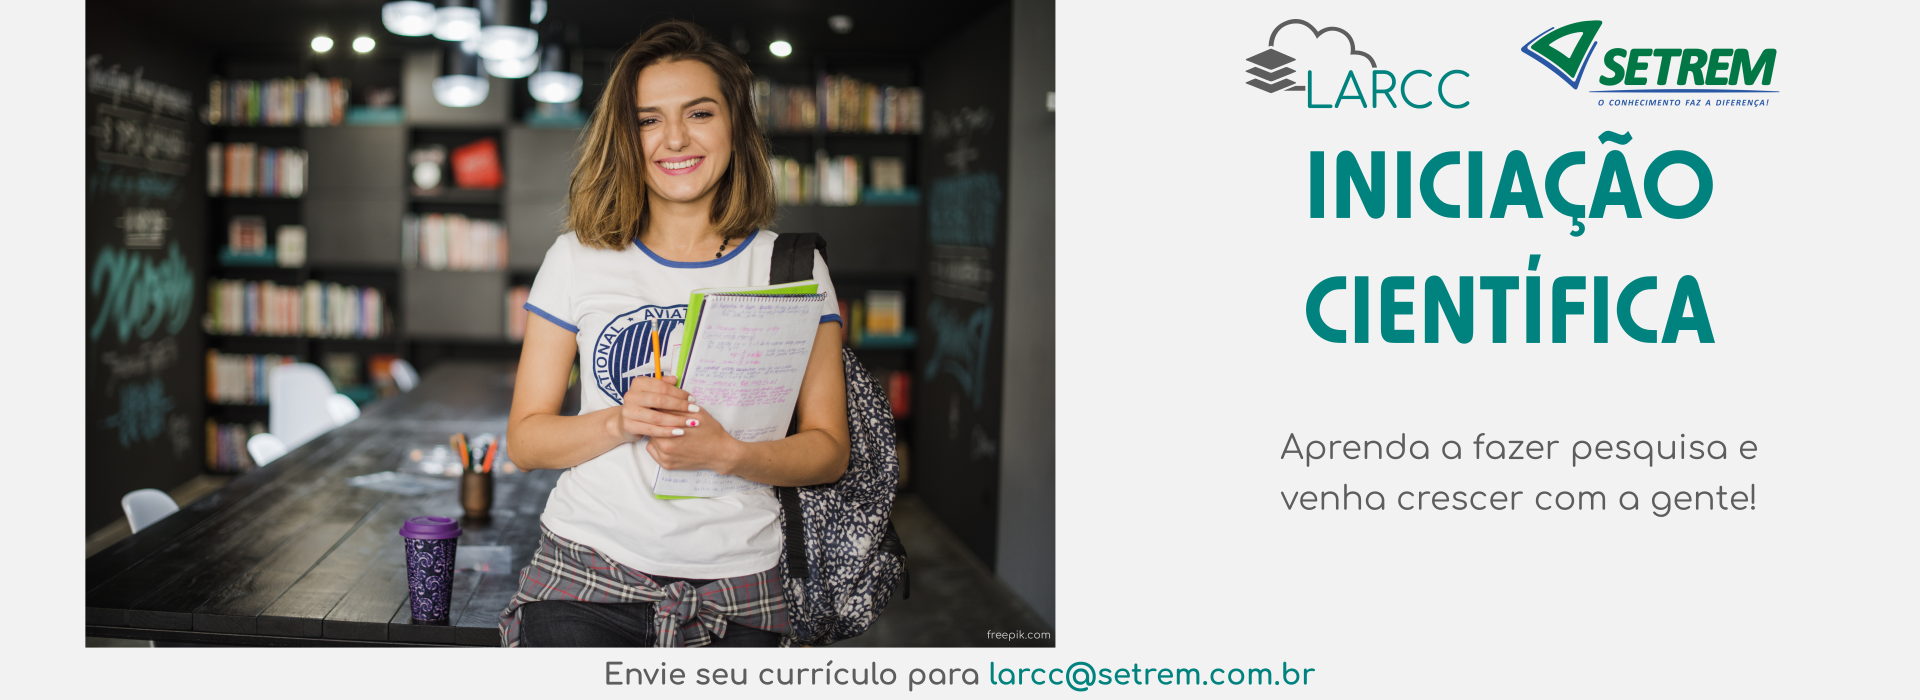 Iniciação Científica: Envie seu currículo para larcc@setrem.com.br